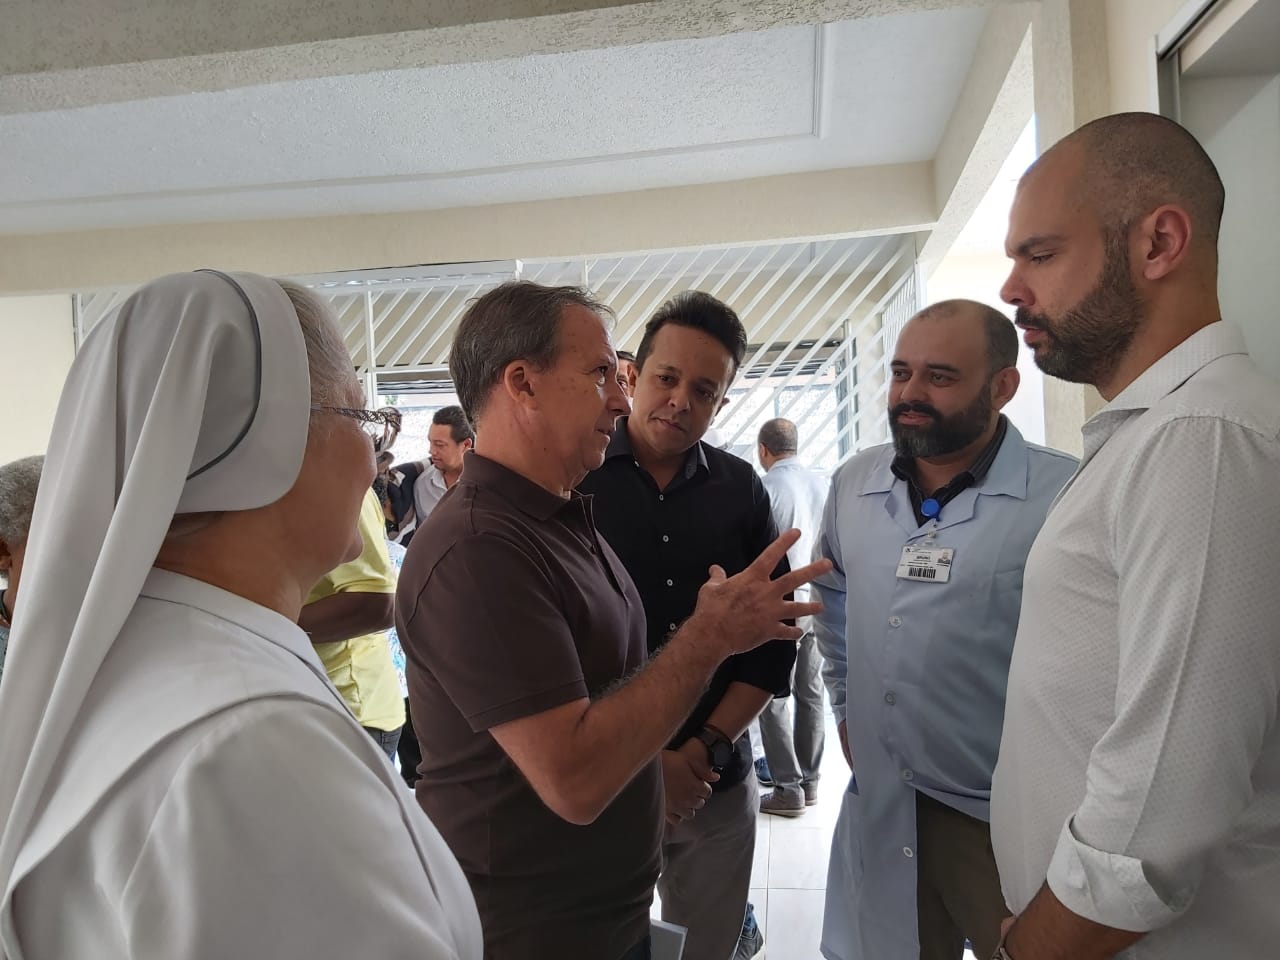 O prefeito, Bruno Covas, e o gerente da unidade do CAPS conversam com um homem branco de camiseta marrom. A conversa é acompanhada por um freira trajada de branco e pelo subprefeito, Gilmar Souza Santos. 